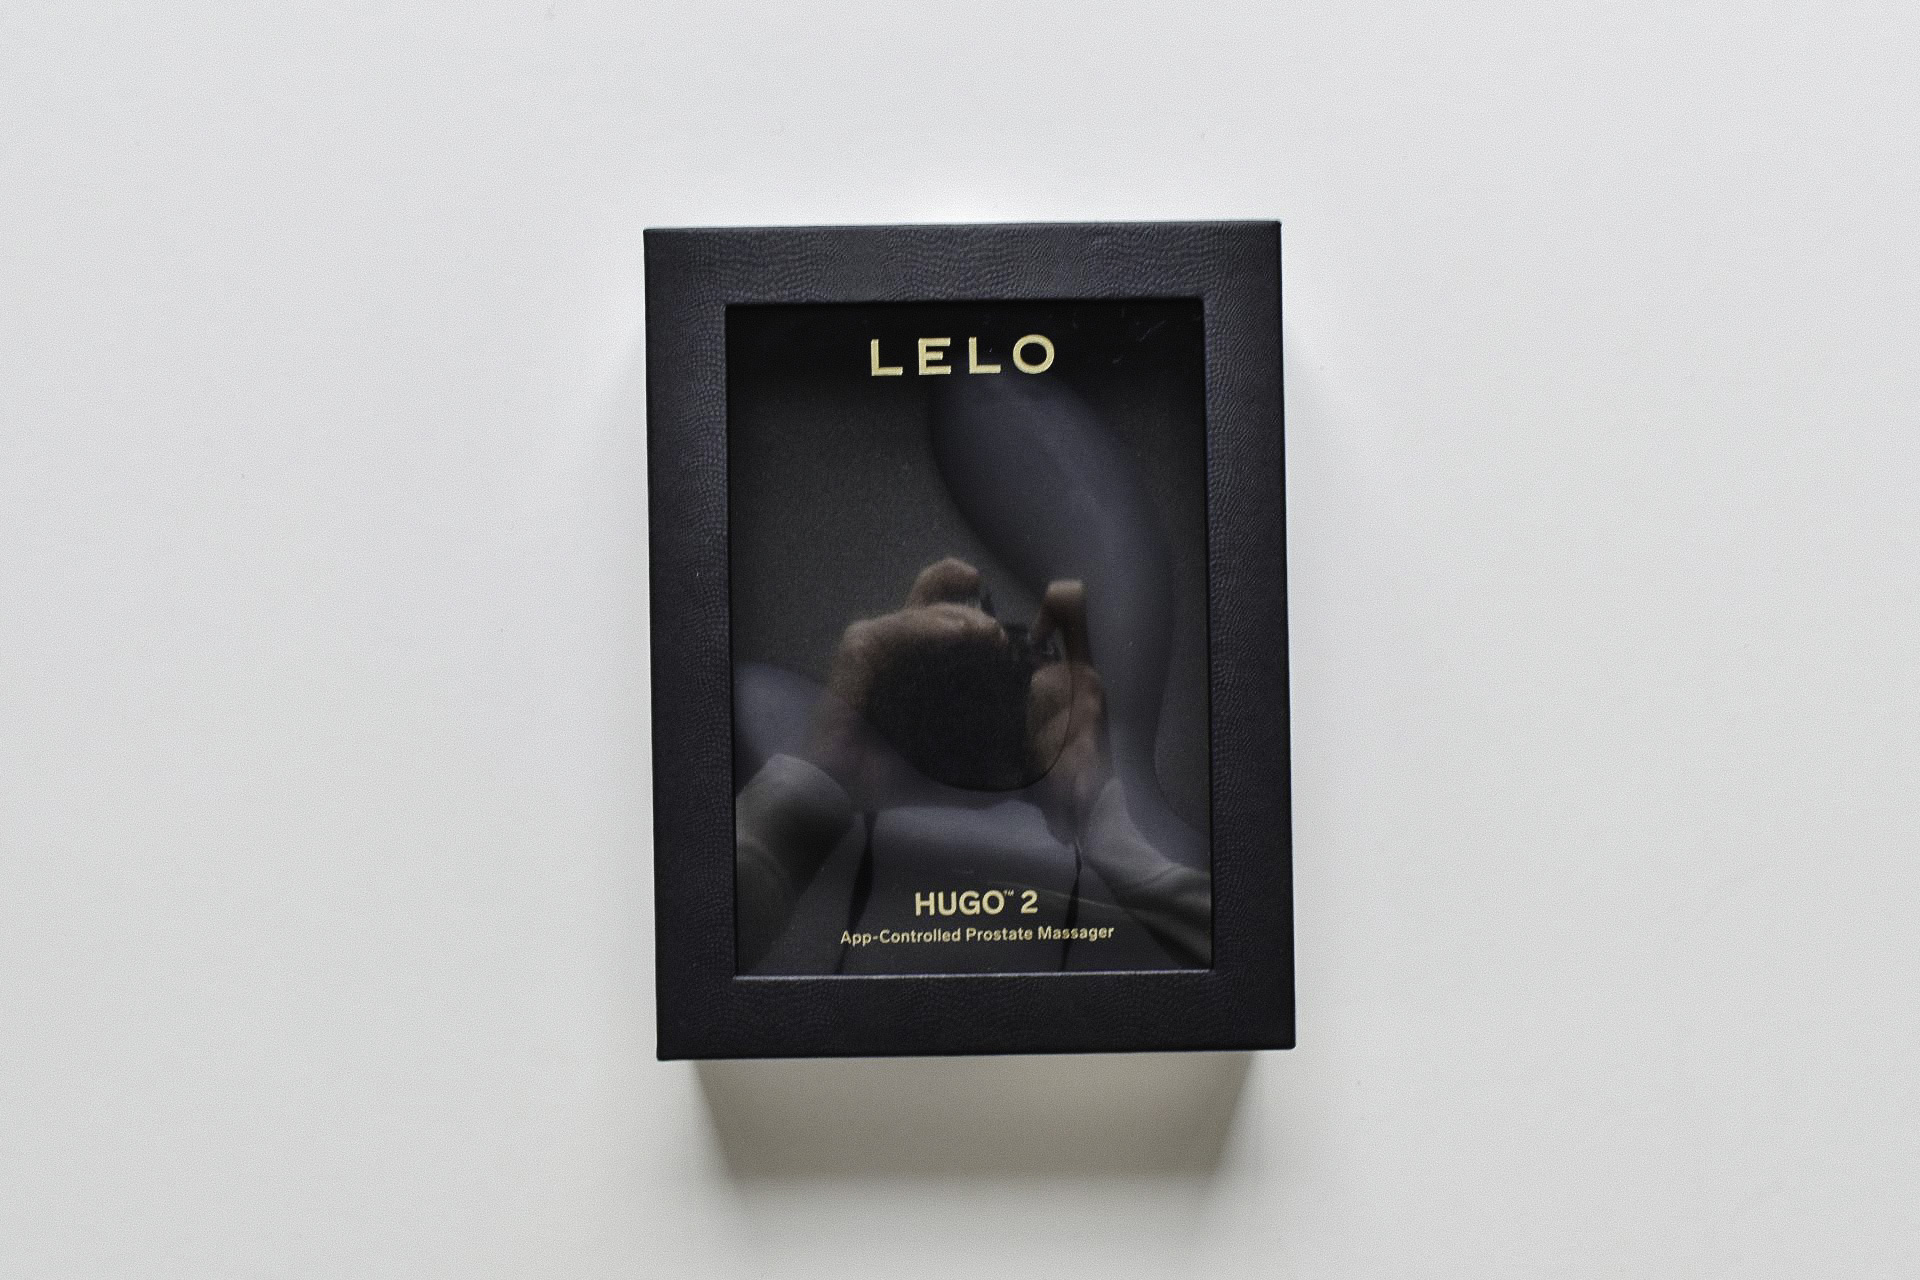 LELO Hugo 2 boxed